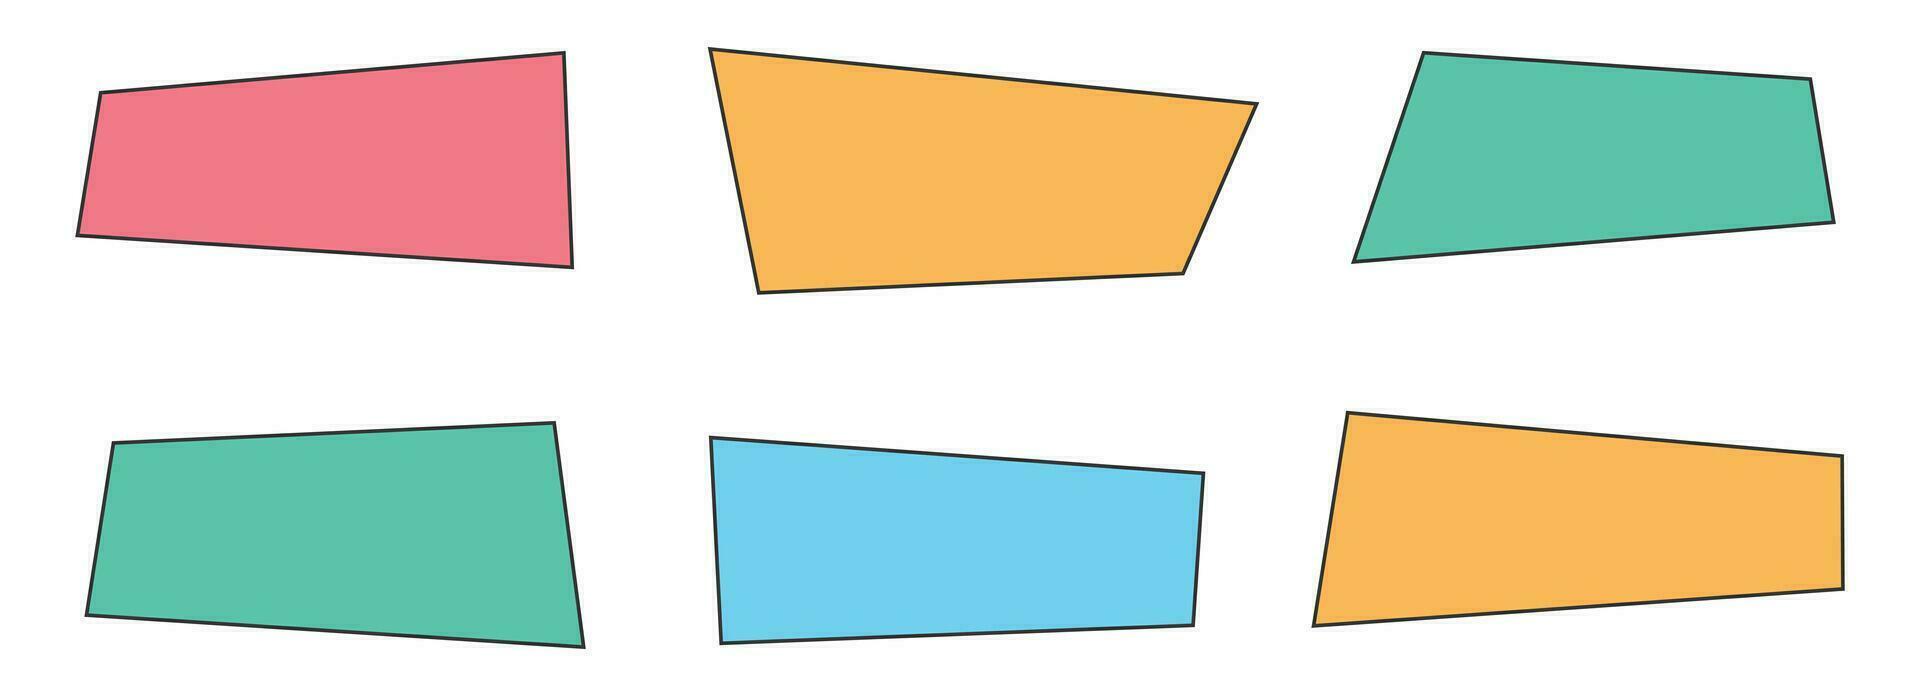 geométrico de colores pancartas en plano estilo vector ilustración aislado en blanco